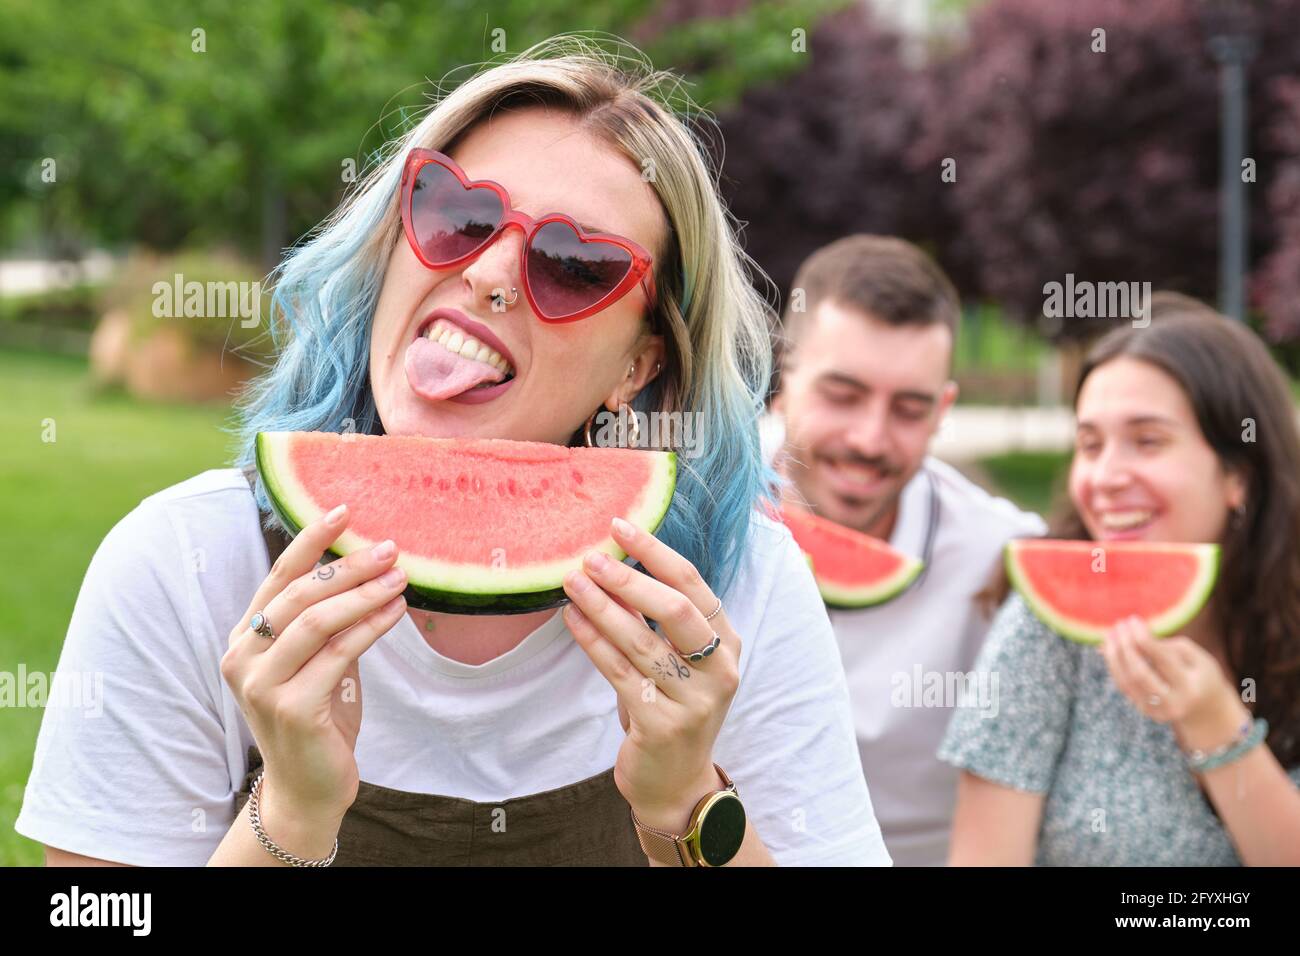 Glückliche junge Frau, die ihre Zunge herausstreckt und ein Stück  Wassermelone hält, und Freunde lächeln auf dem Hintergrund Stockfotografie  - Alamy